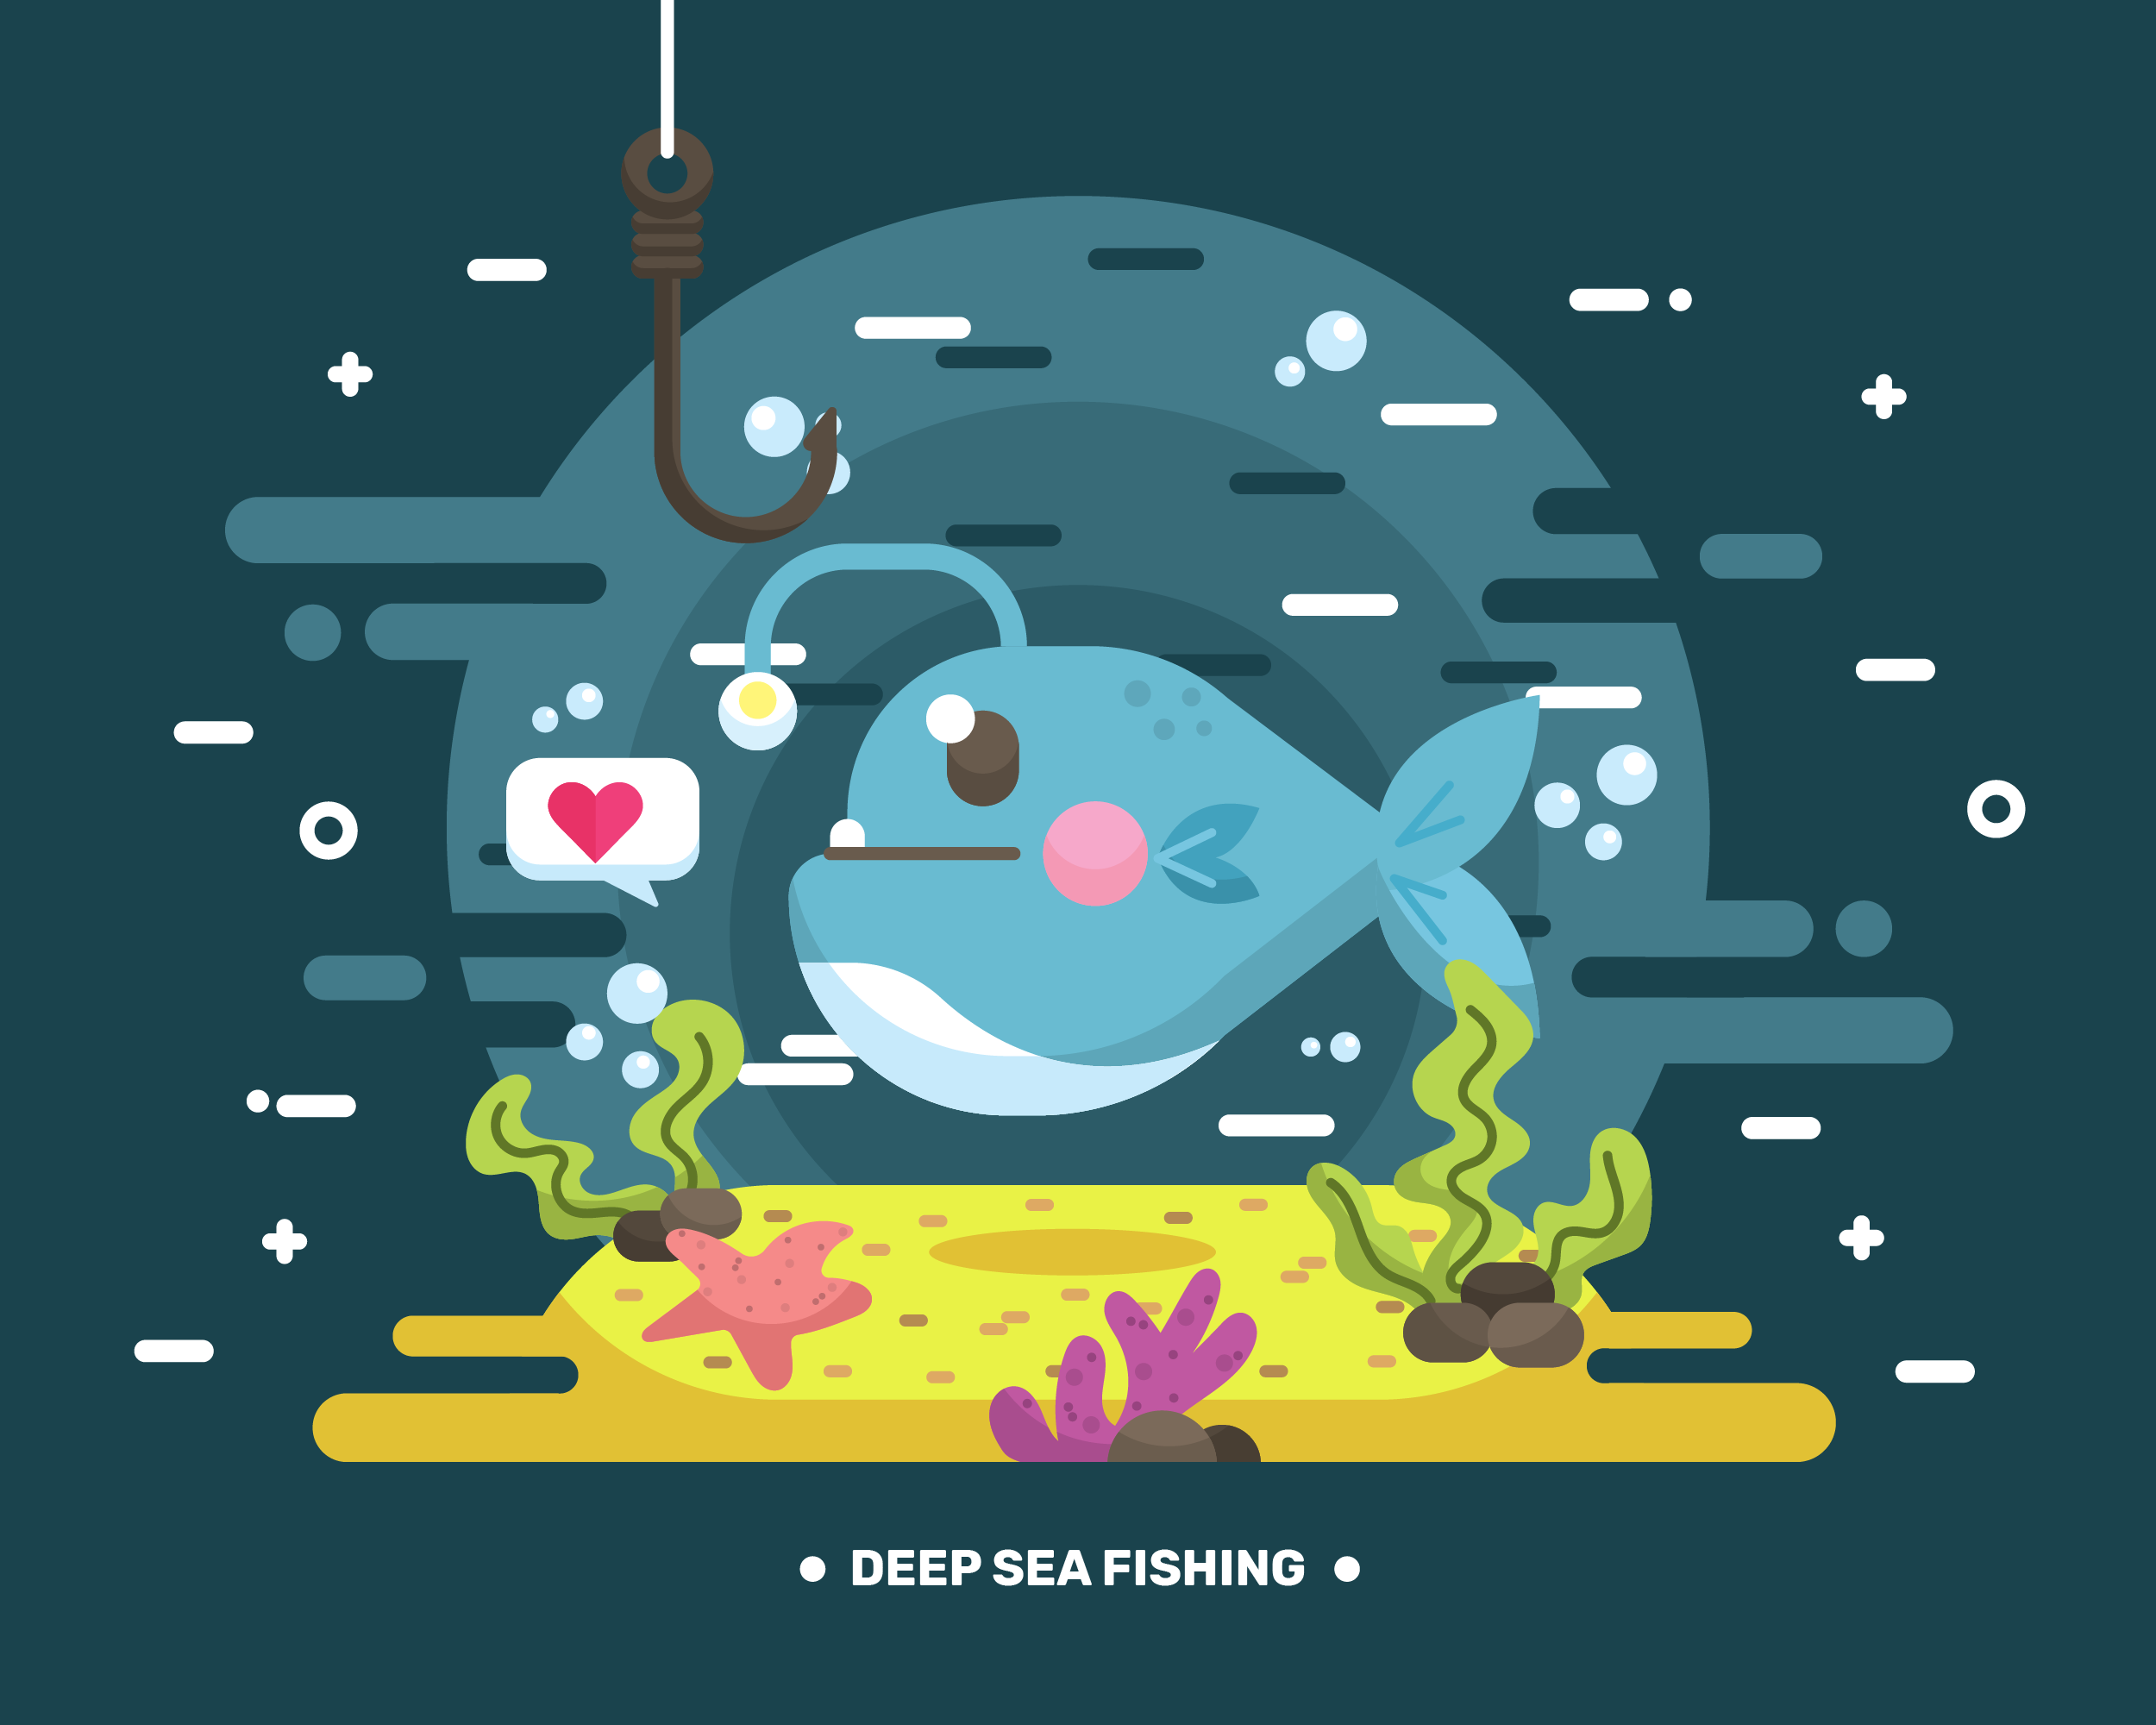 Download Deep Sea Fishing Vector - Download Free Vectors, Clipart ...